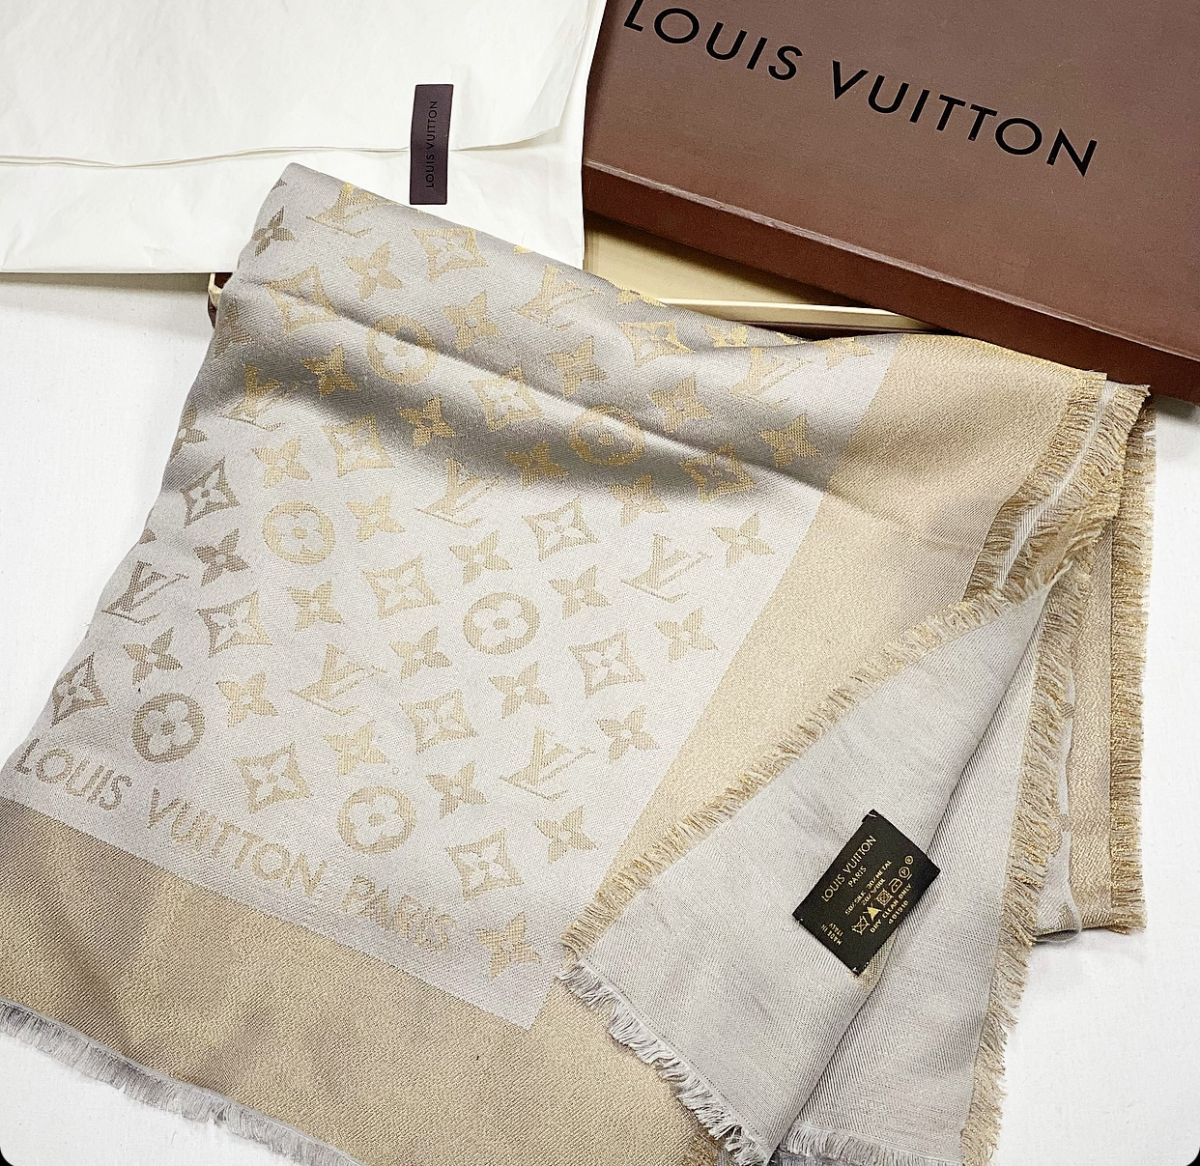 Шаль Louis Vuitton размер 140 цена 23 078 руб